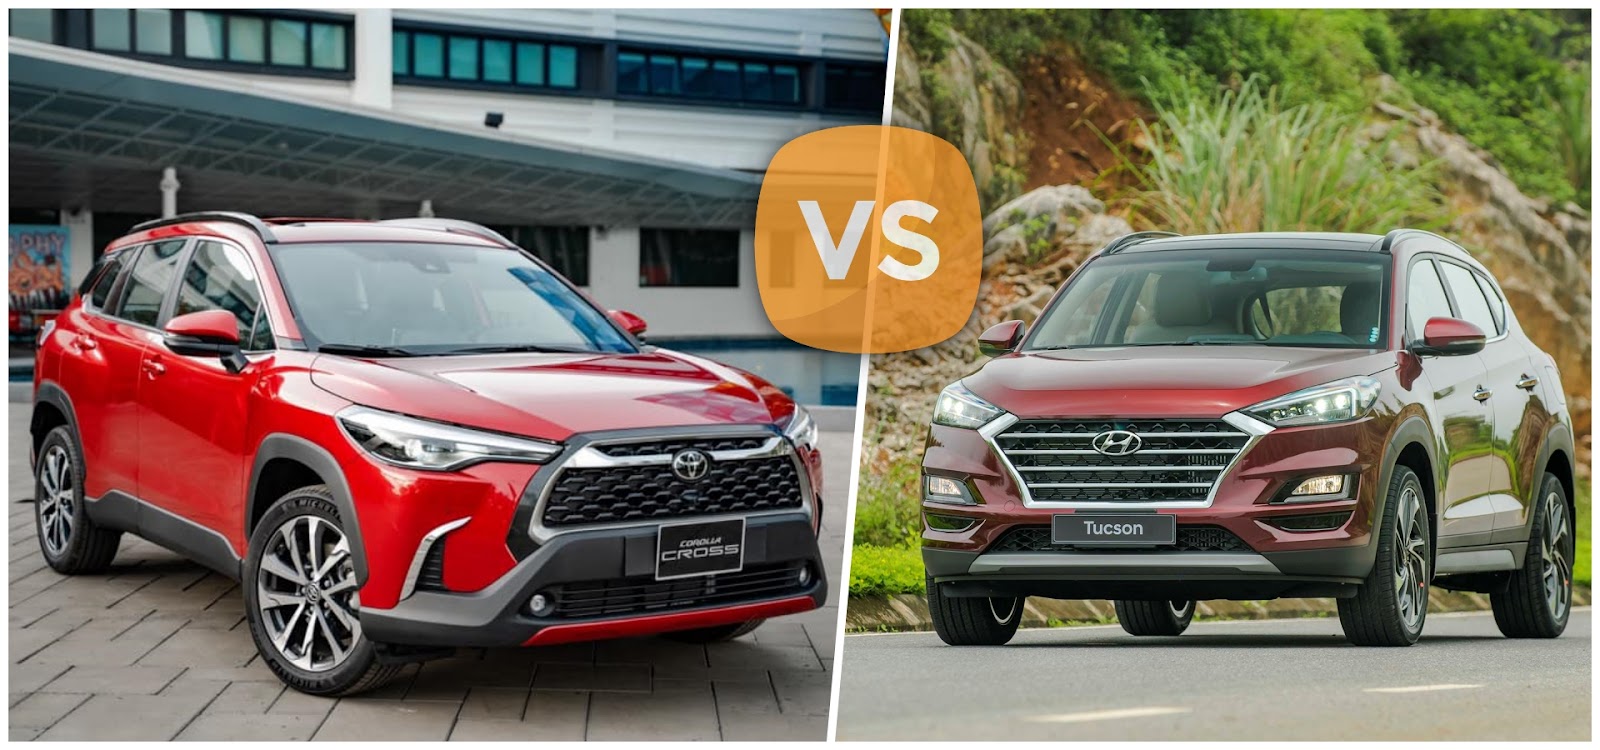 So sánh Toyota Cross và Tucson: đâu là mẫu xe đáng mua năm 2021?